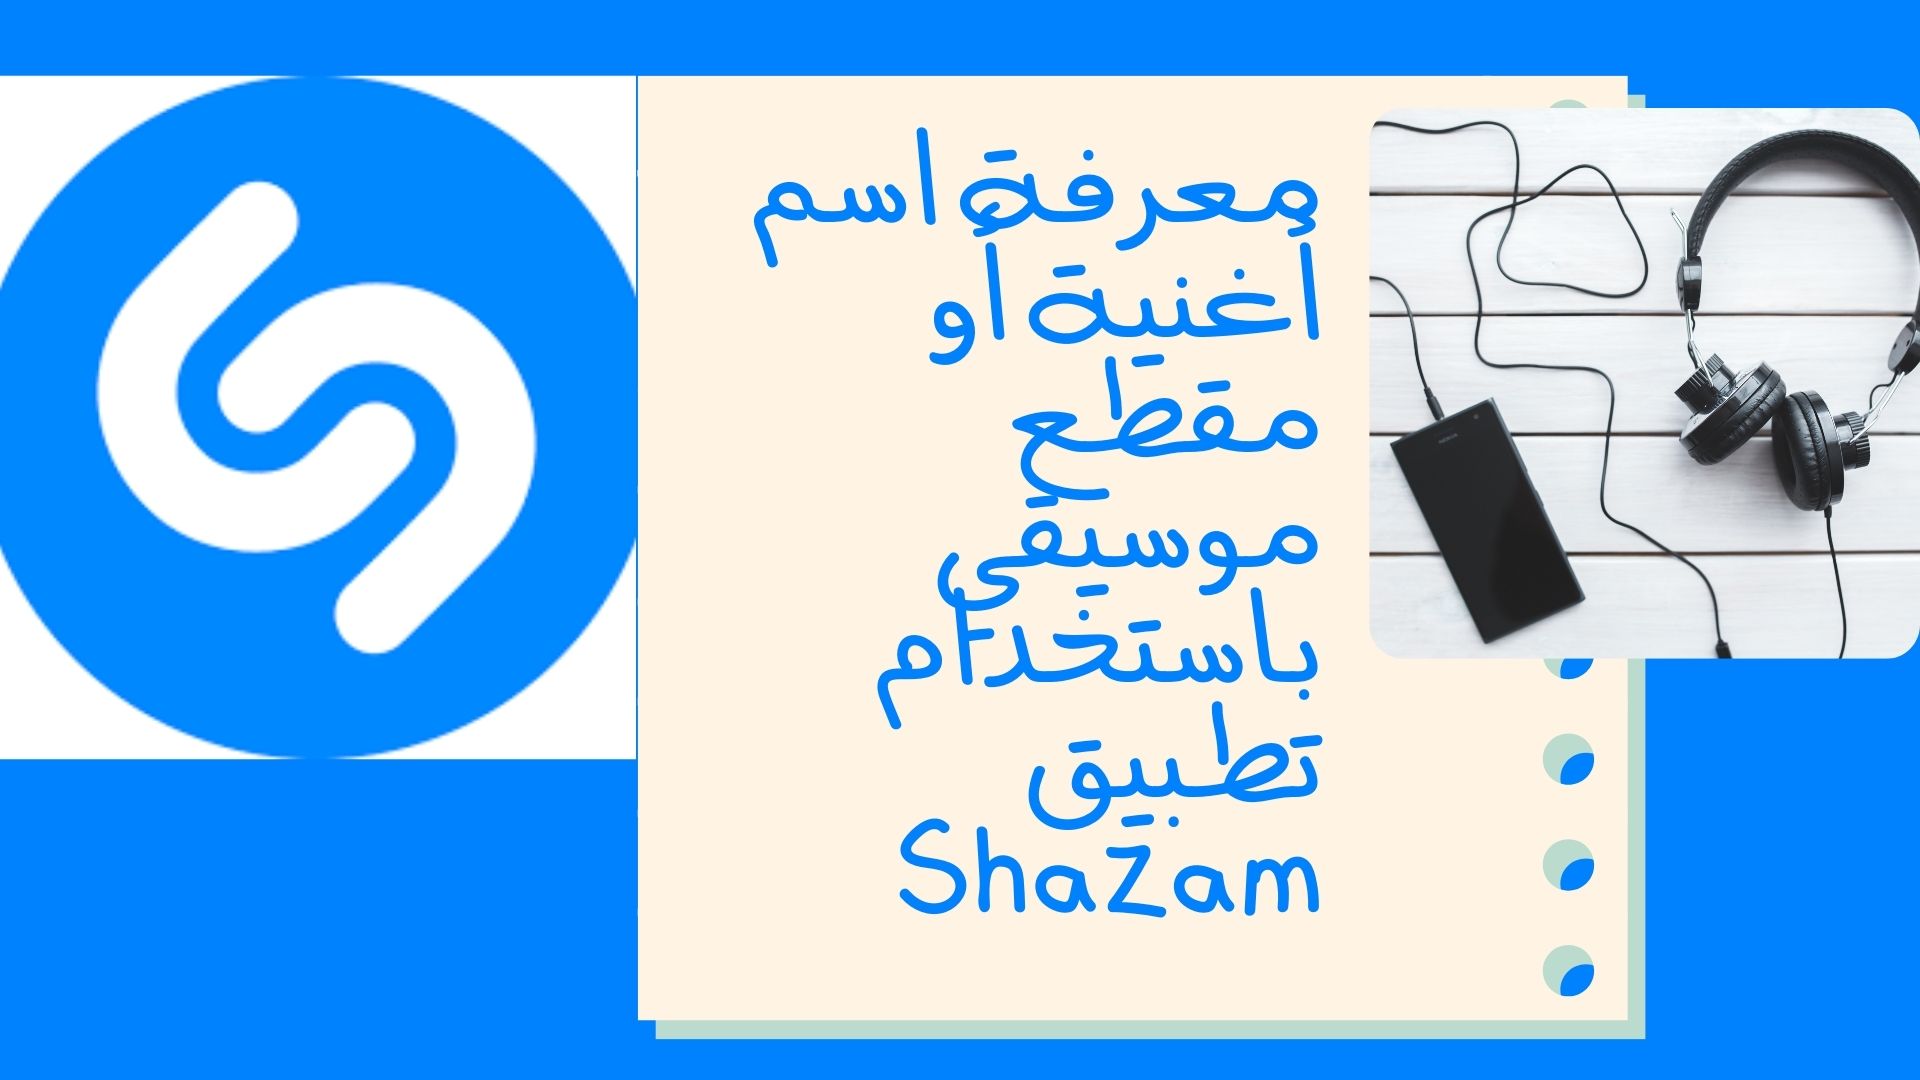 معرفة اسم أغنية أو مقطع موسيقي باستخدام تطبيق Shazam